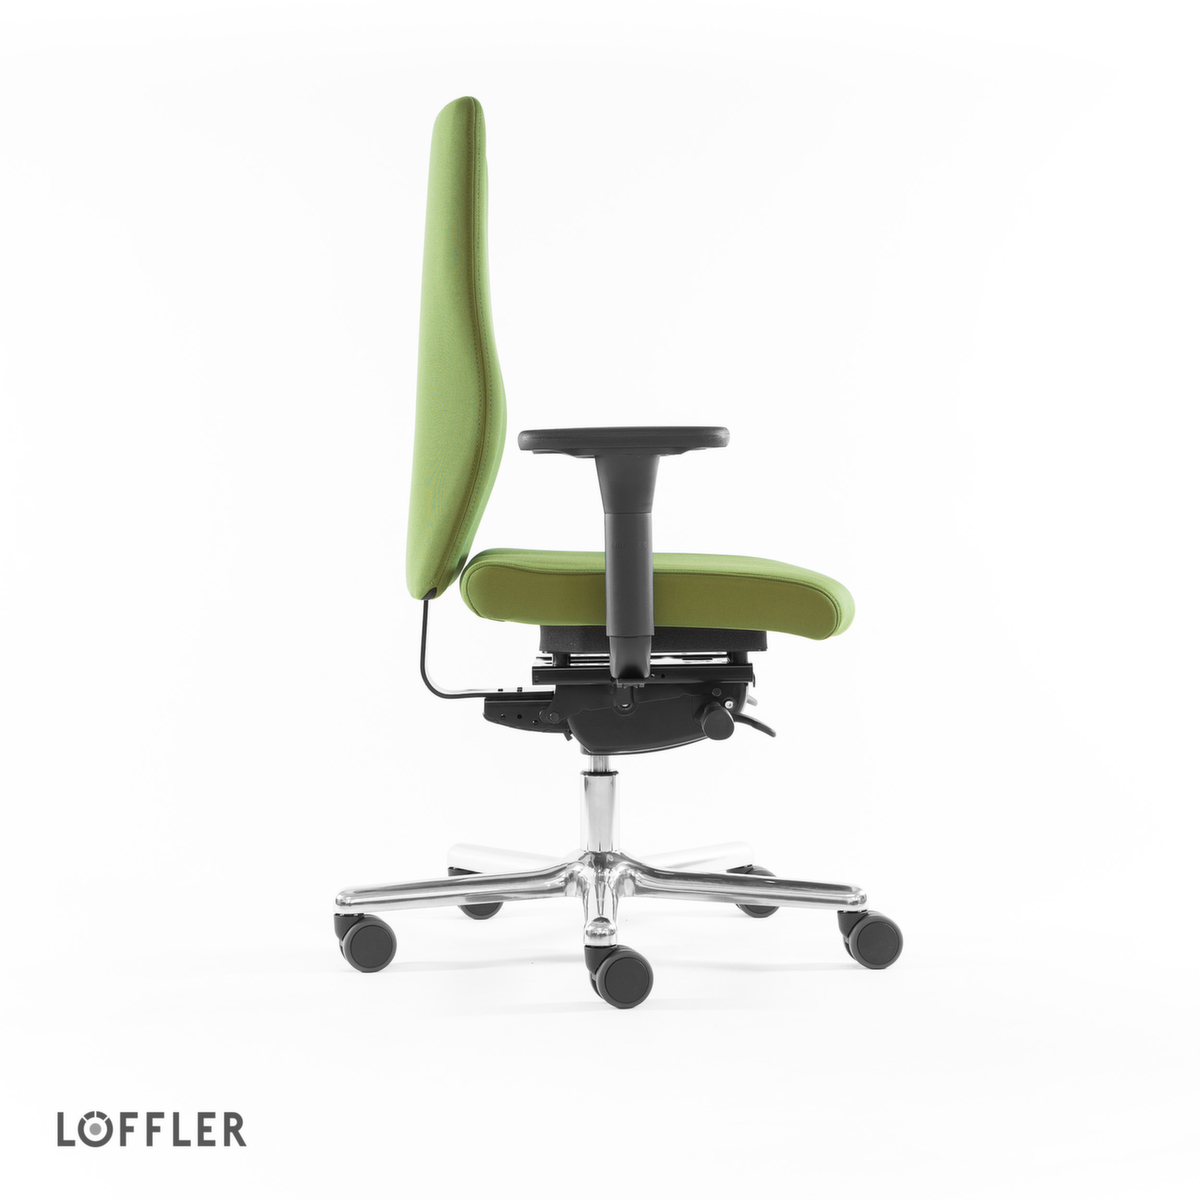 Löffler Bürodrehstuhl mit Taschenfederkern-Sitz, grün Standard 3 ZOOM